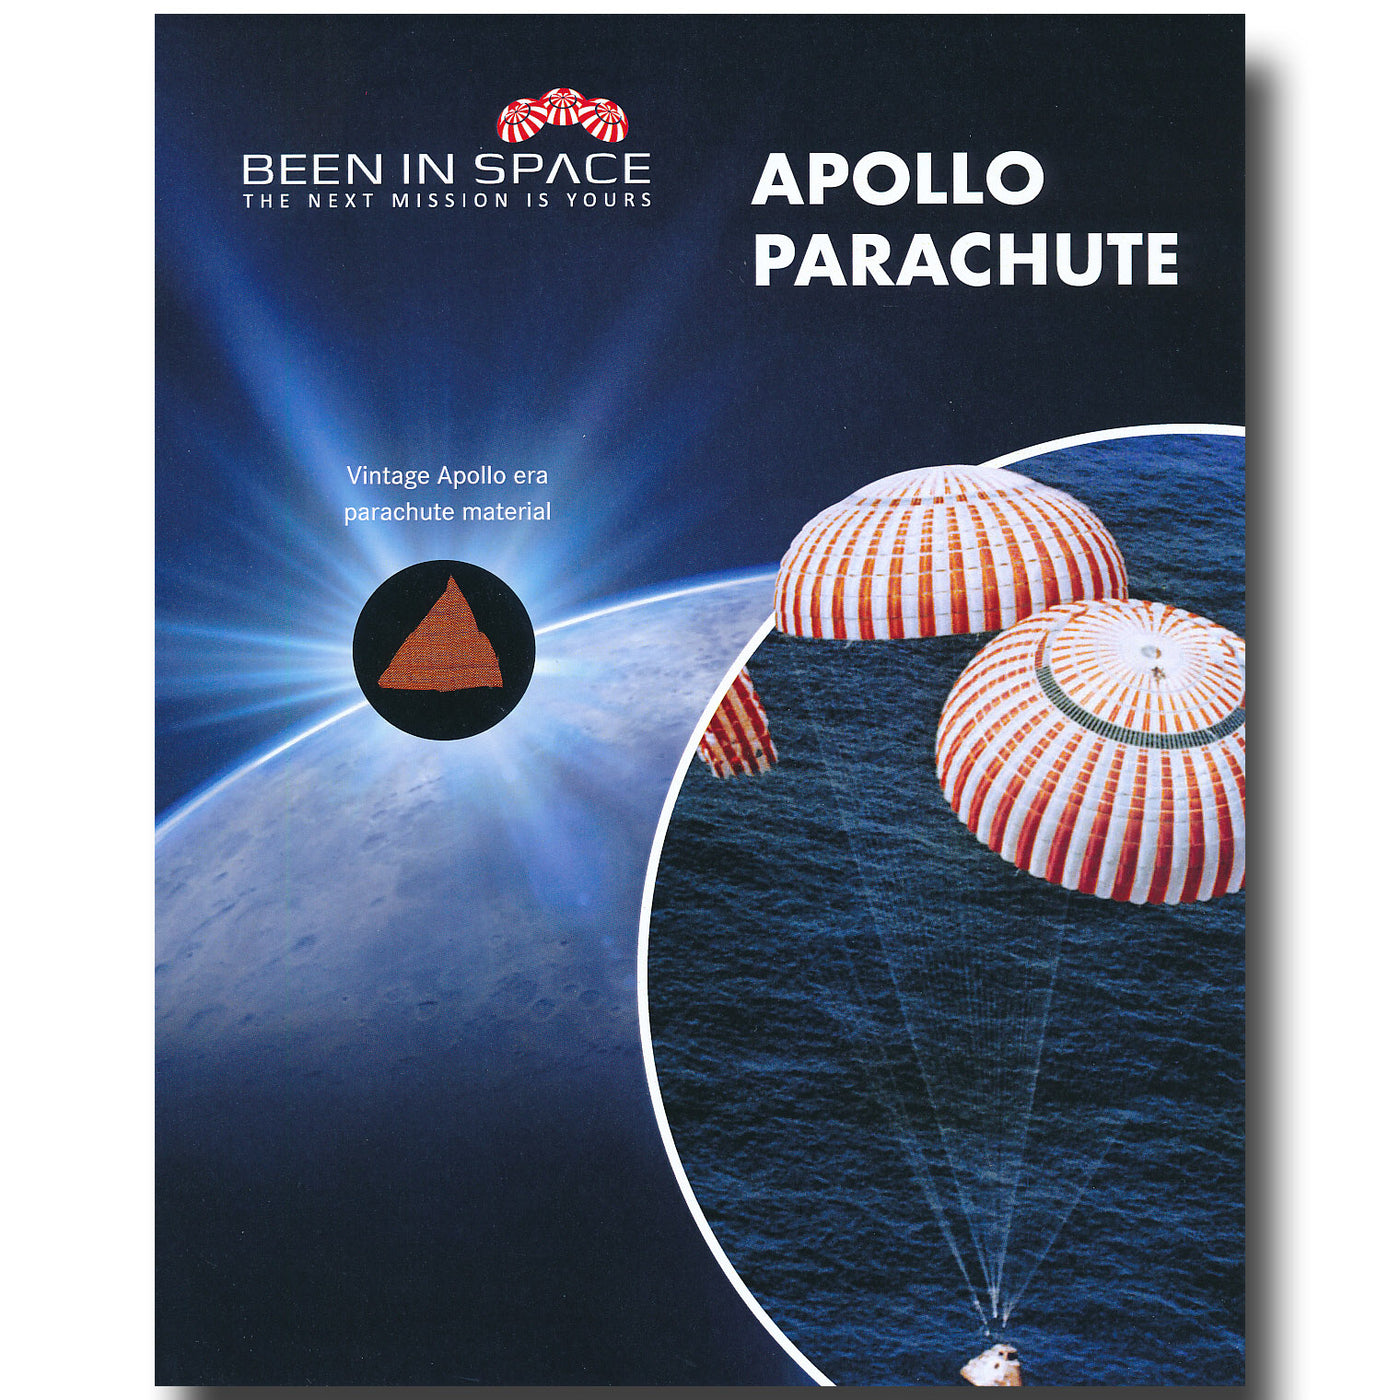 Apollo parachute vintage unflown spare artifact on presentation